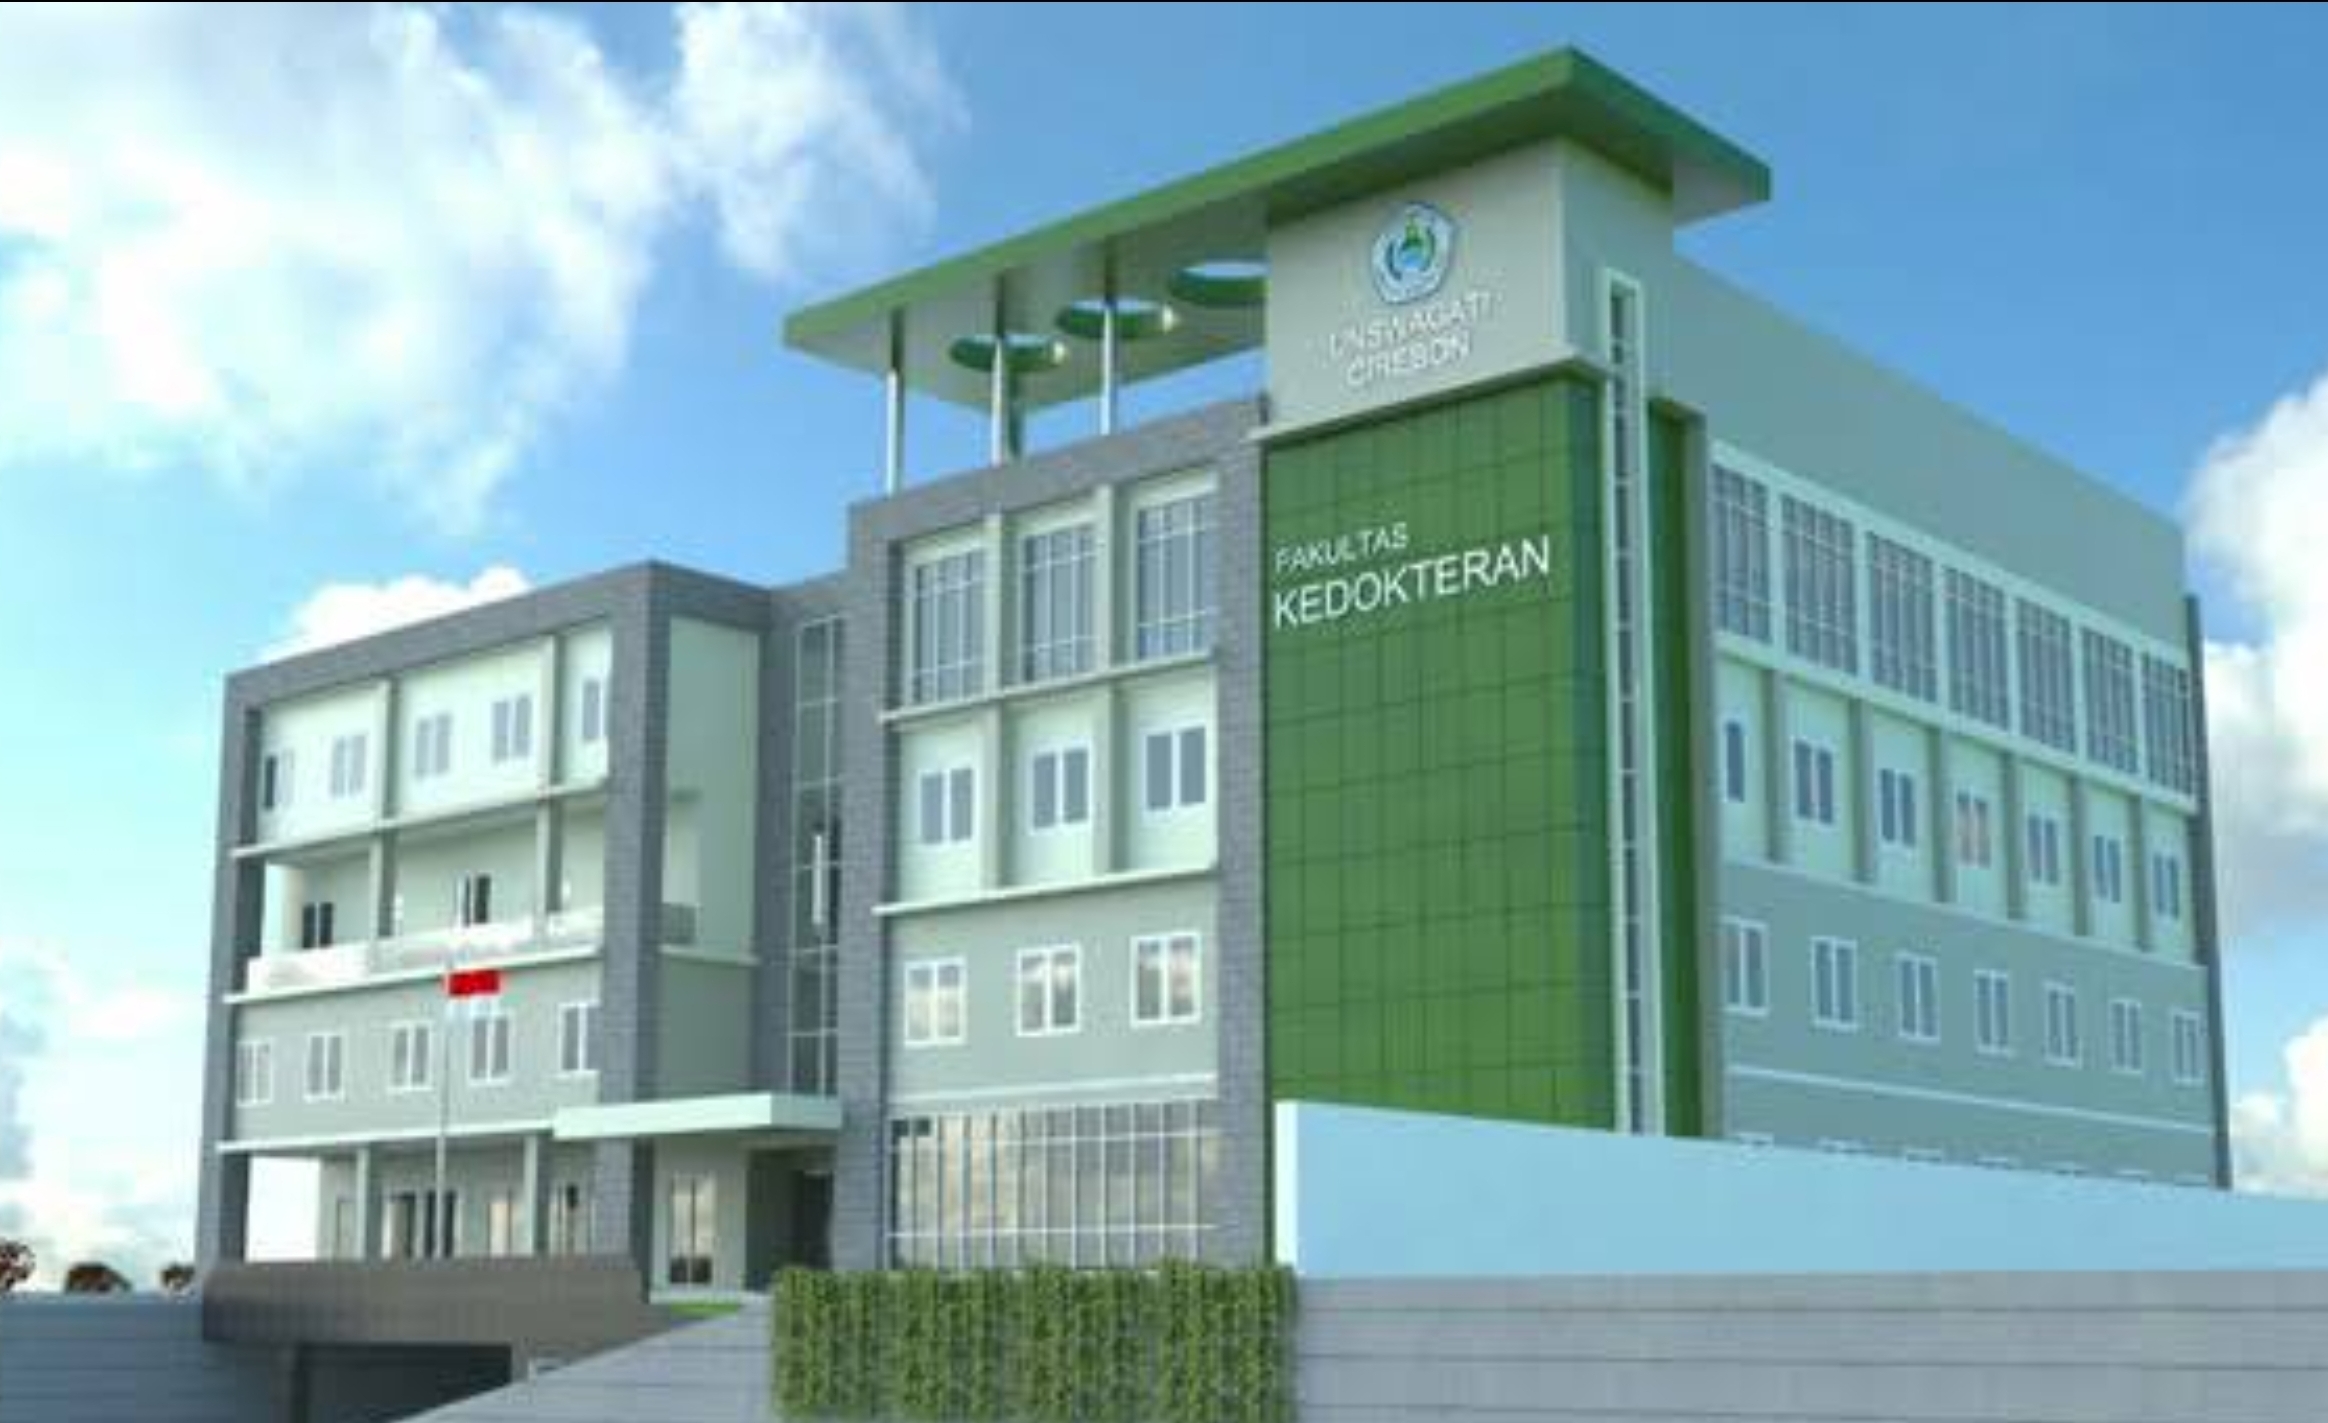 Mau Kuliah? Ini Daftar 4 Universitas Swasta Terbaik di Cirebon, Ada Jurusan Kedokteran Loh